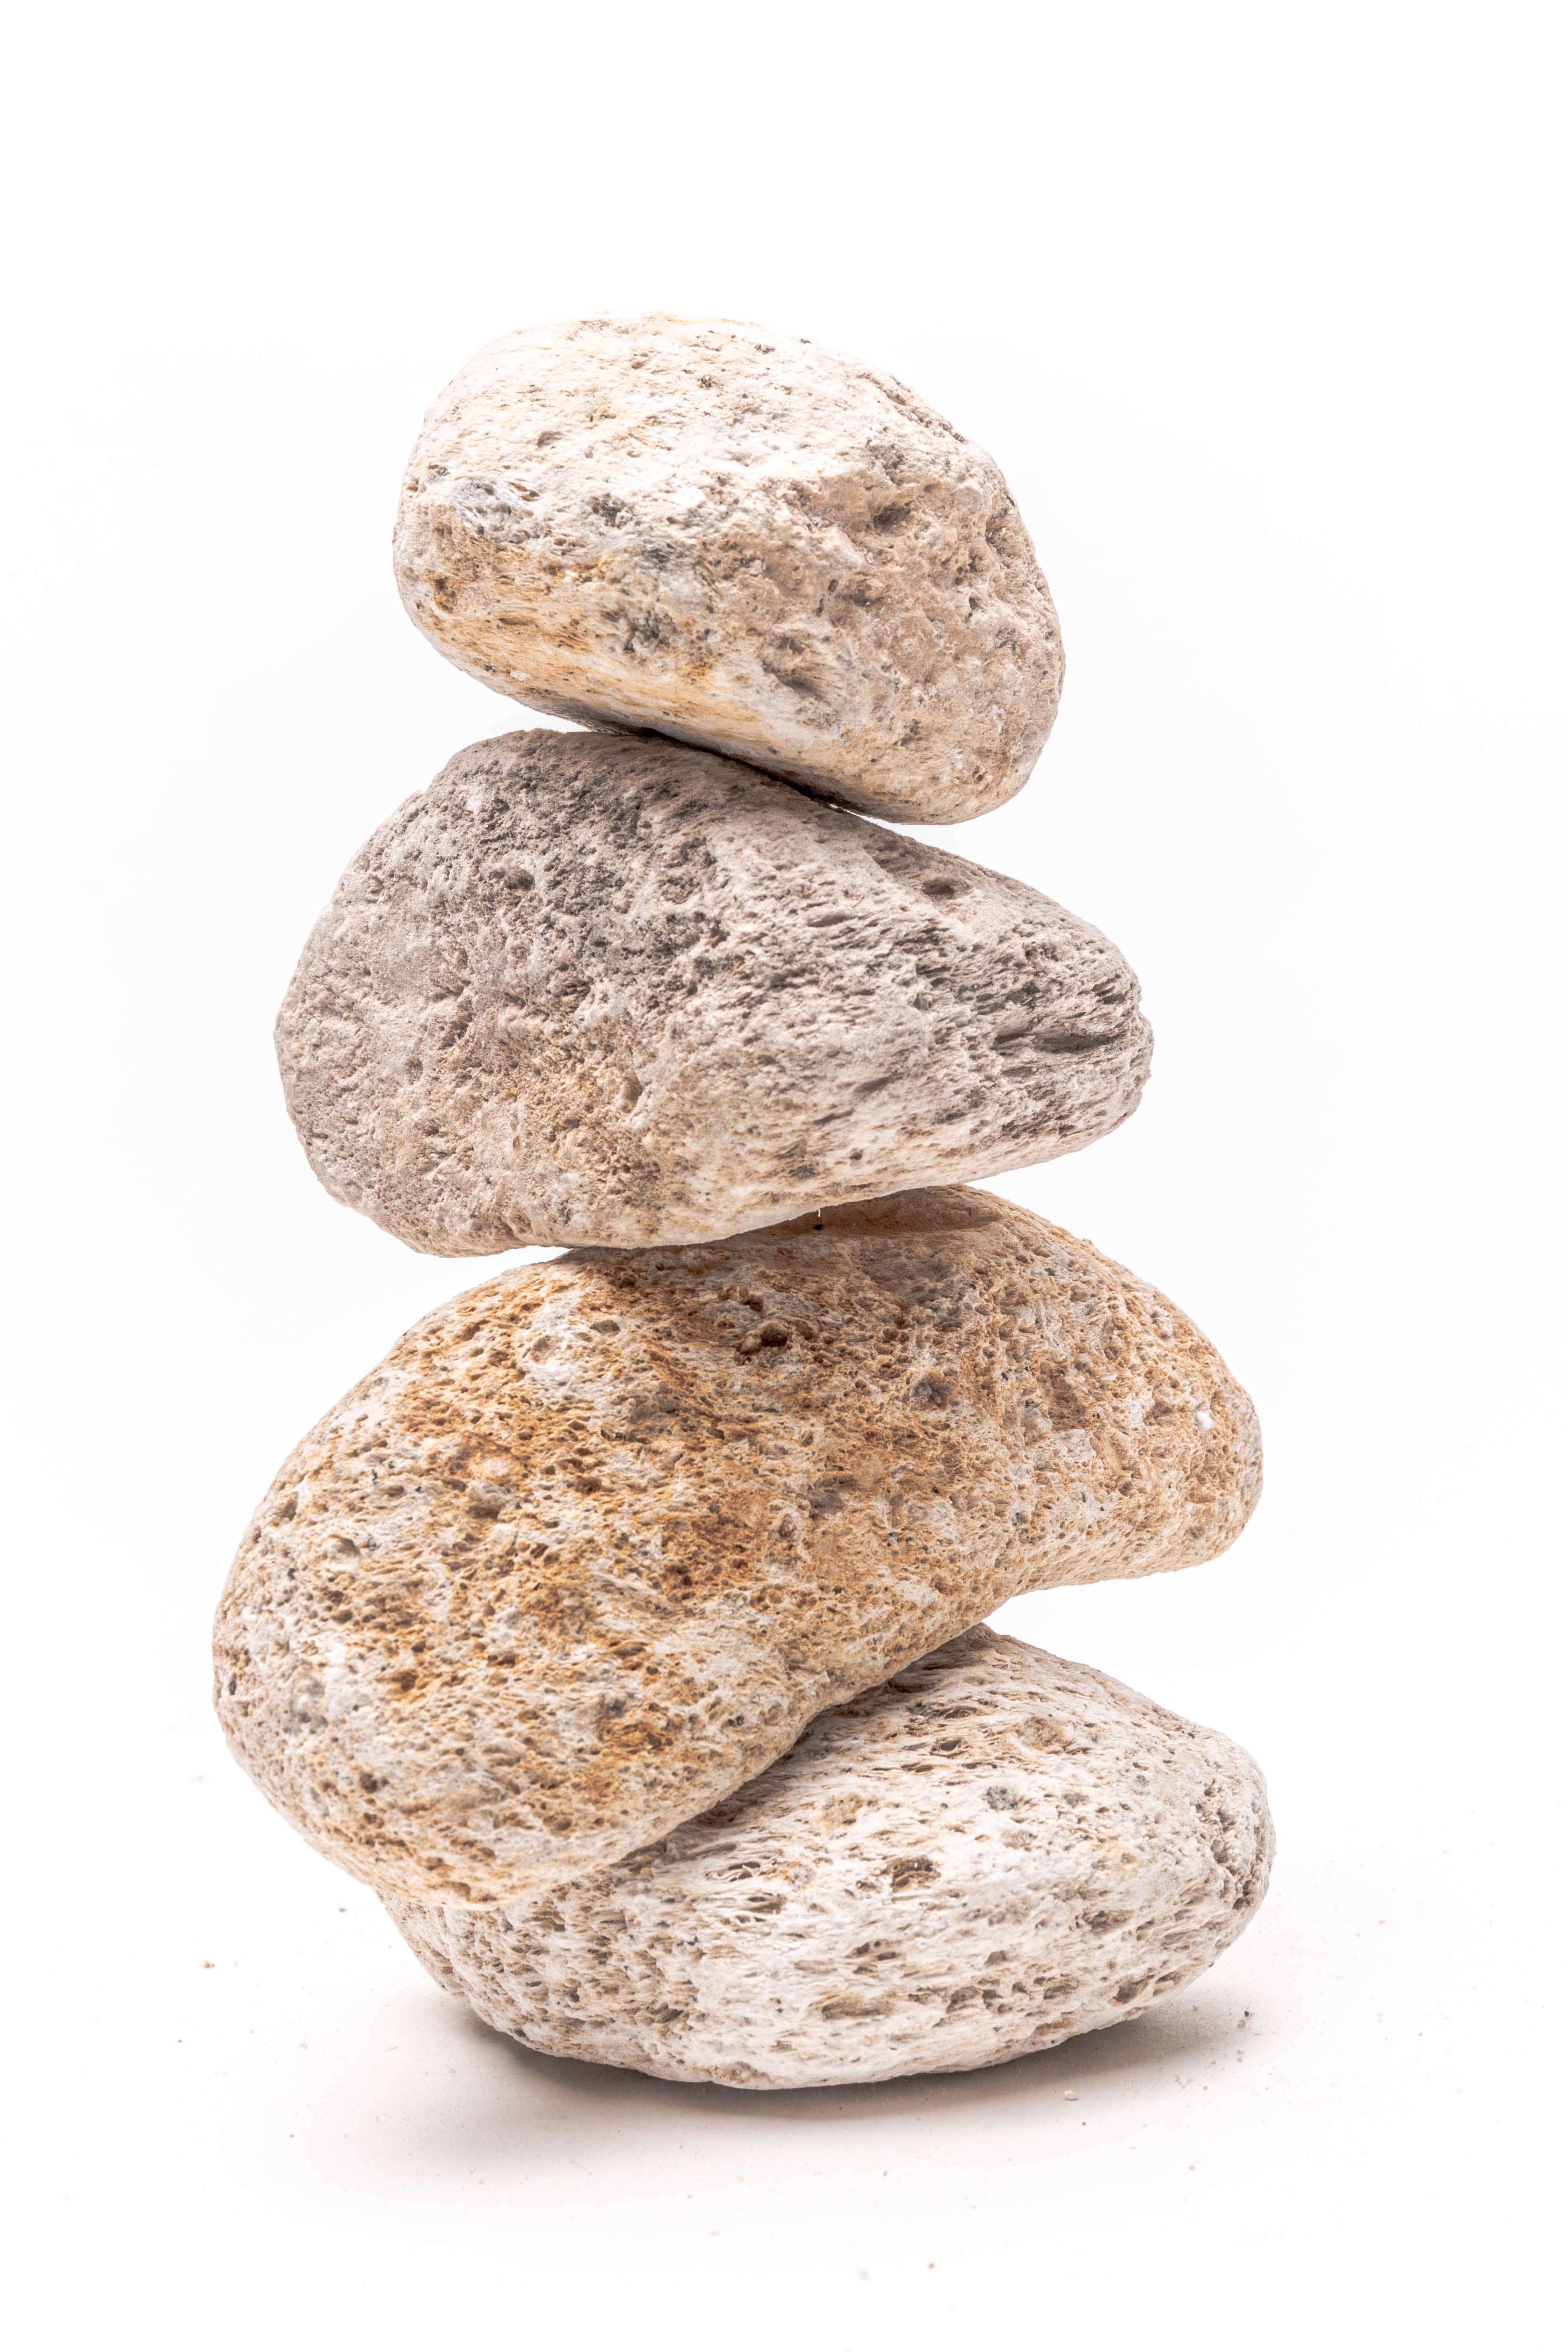 Pumice Stone – SoBotanical